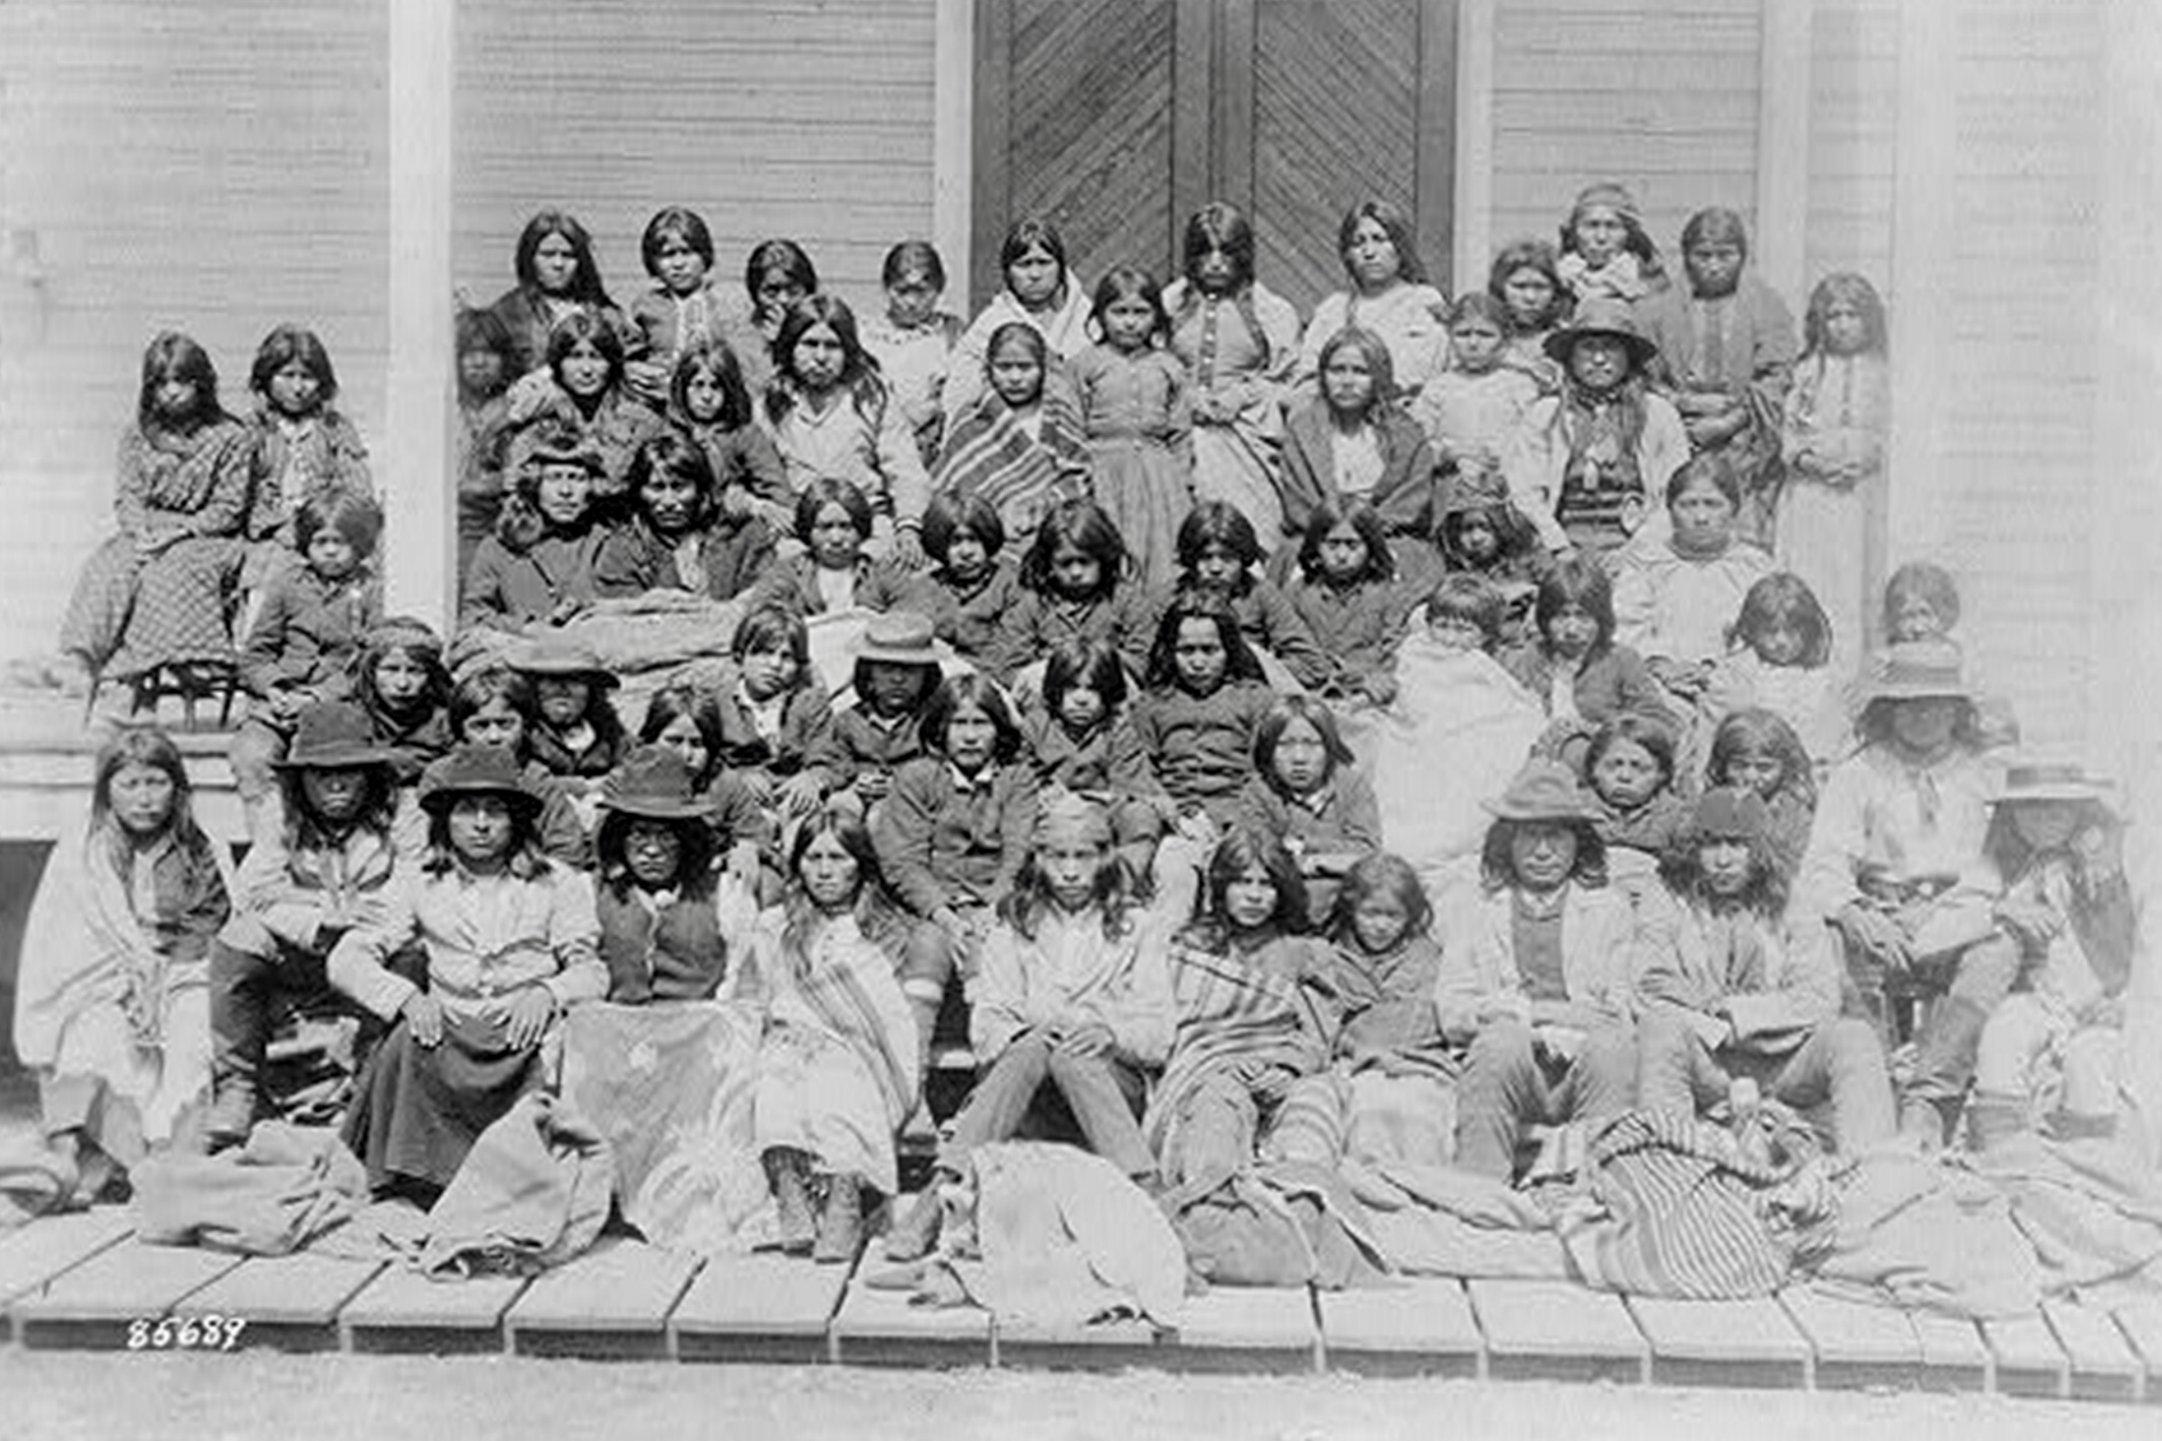 Eine Gruppe von etwa 50 Kindern posiert bei der Ankunft im Internat in Carlisle Pennsylvania in fünf Reihen sitzend auf den Treppen des Gebäudes. Die meisten haben langes dunkles Haar, manche tragen Decken über ihrer Kleidung. Sie schauen direkt in die Kamera